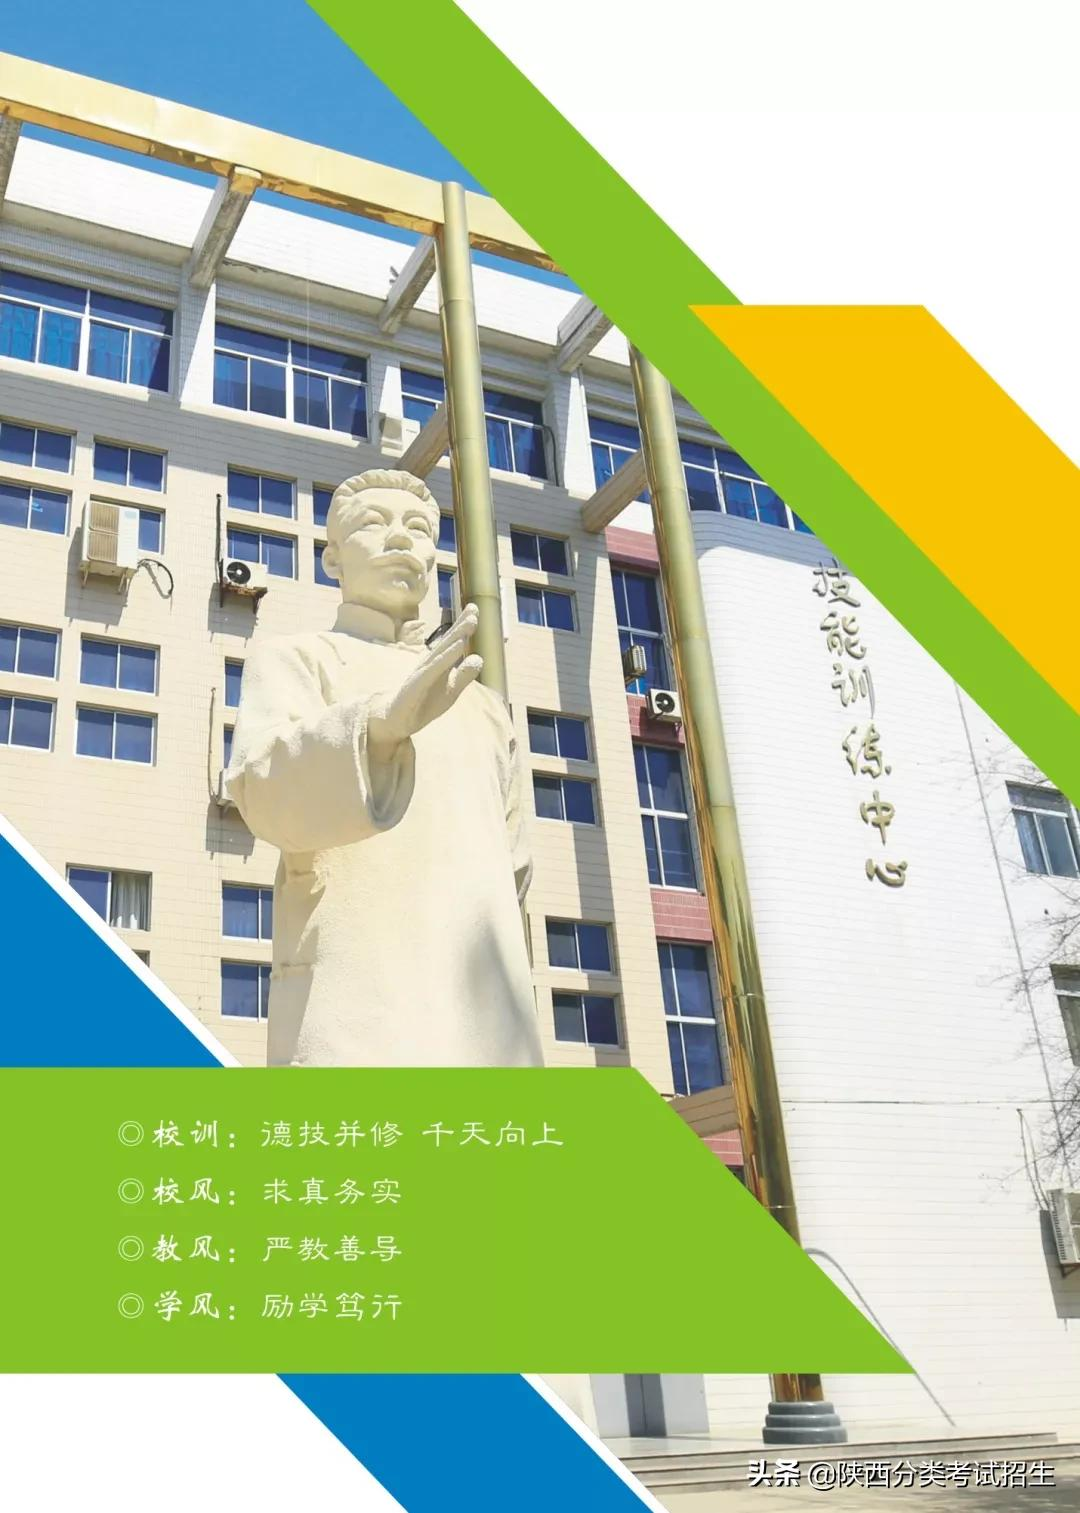 「招生简章」陕西职业技术学院2022年单独考试招生简章